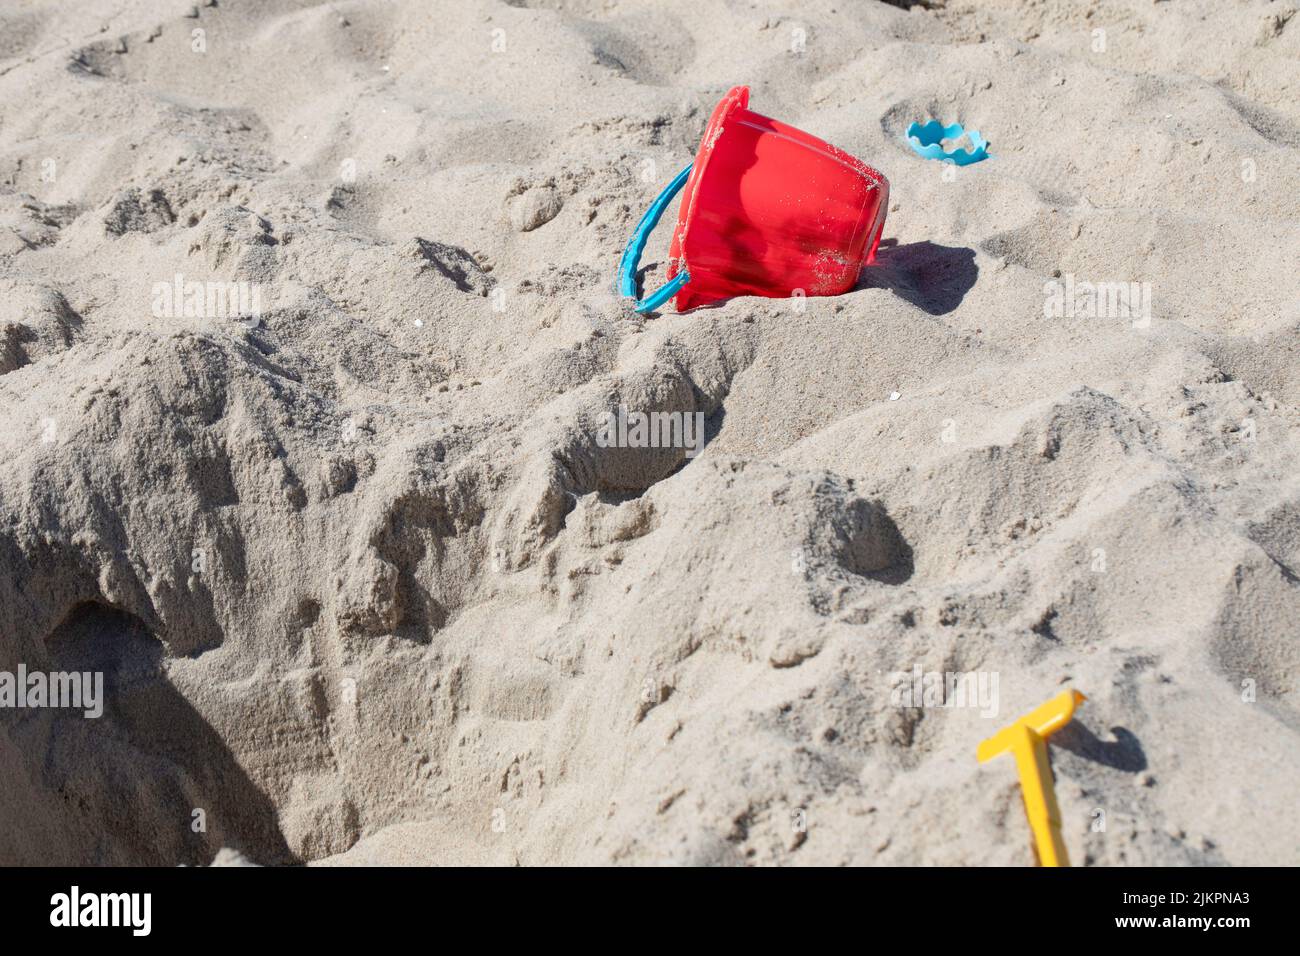 Eimer und Schaufel im Sand, Kinderspielzeug am Strand. Stockfoto